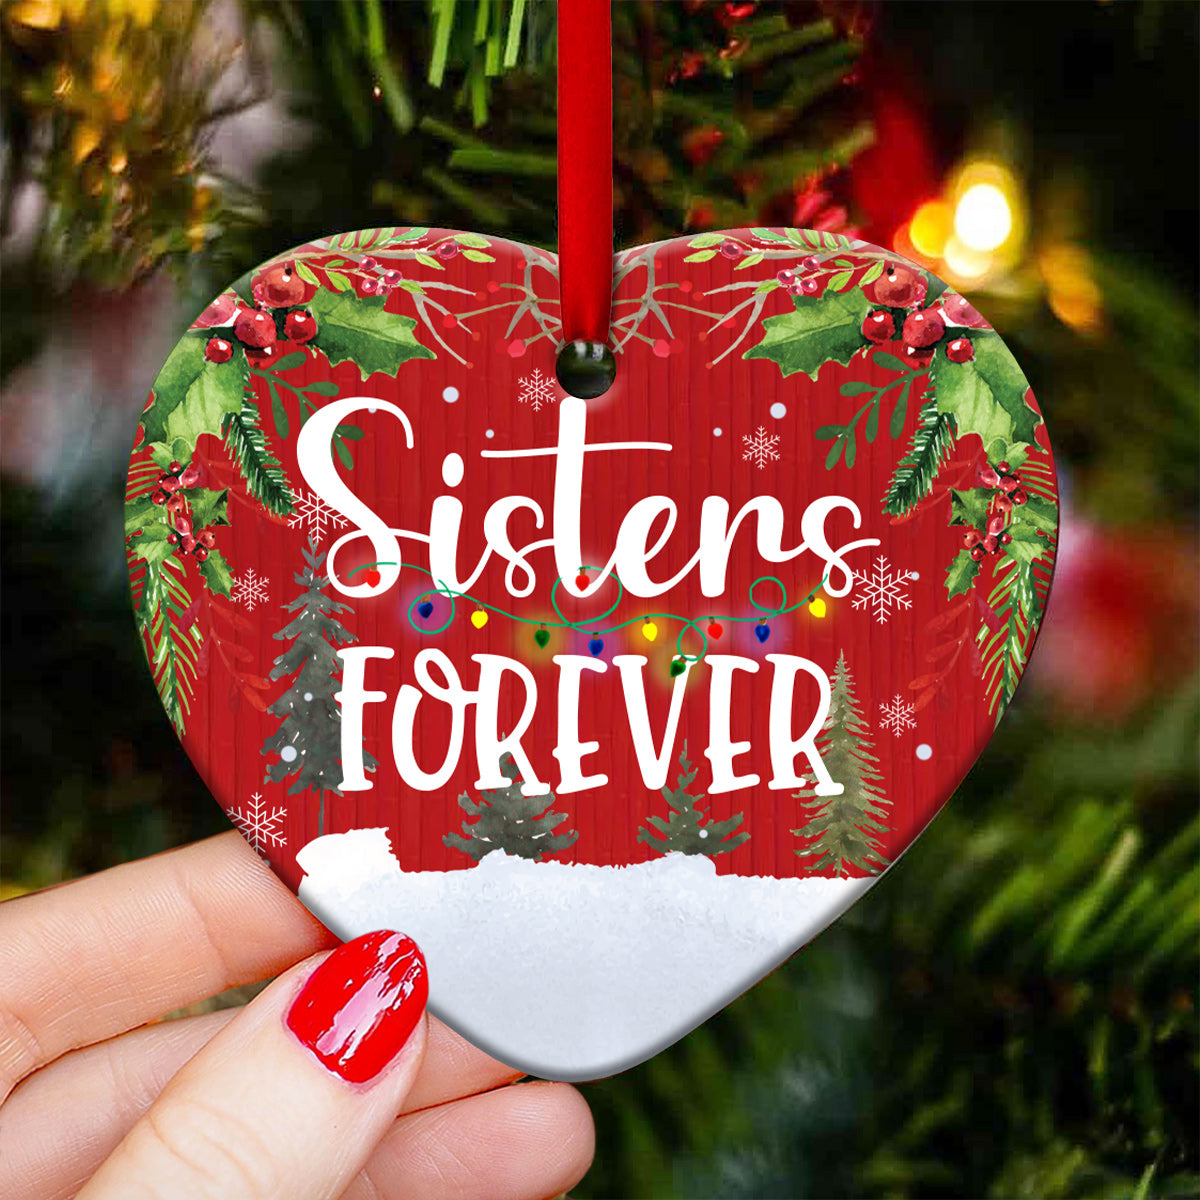 Penguin Sister Forever Heart Ceramic Ornament - Christmas Ornament - Christmas Gift